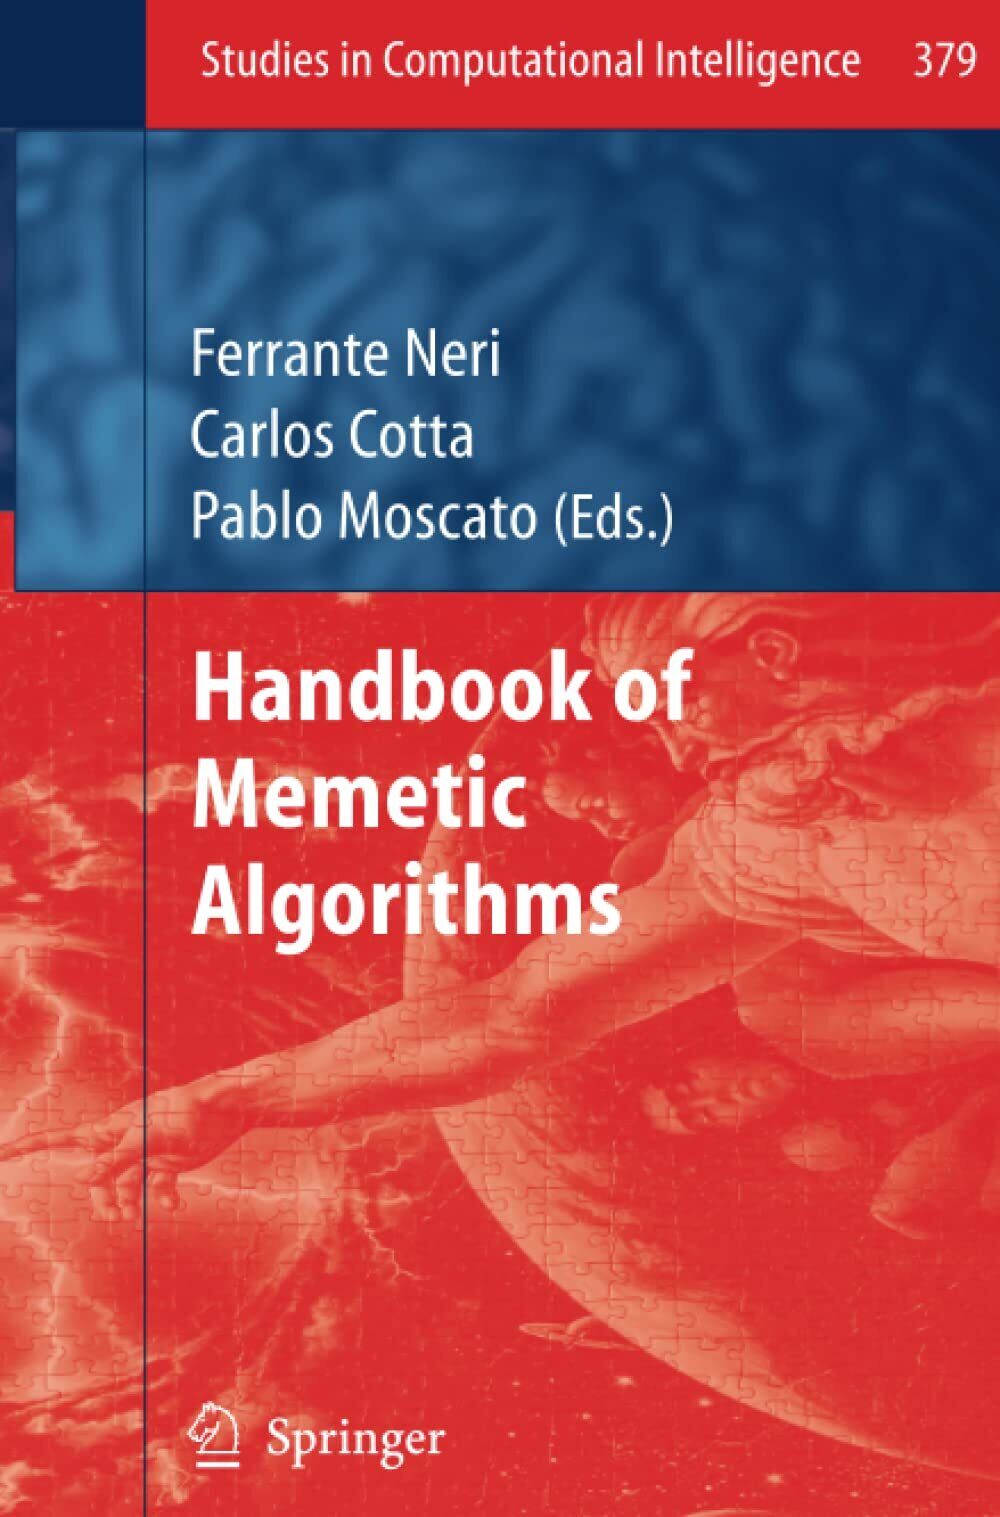 Handbook of Memetic Algorithms - Ferrante Neri - Springer, 2013